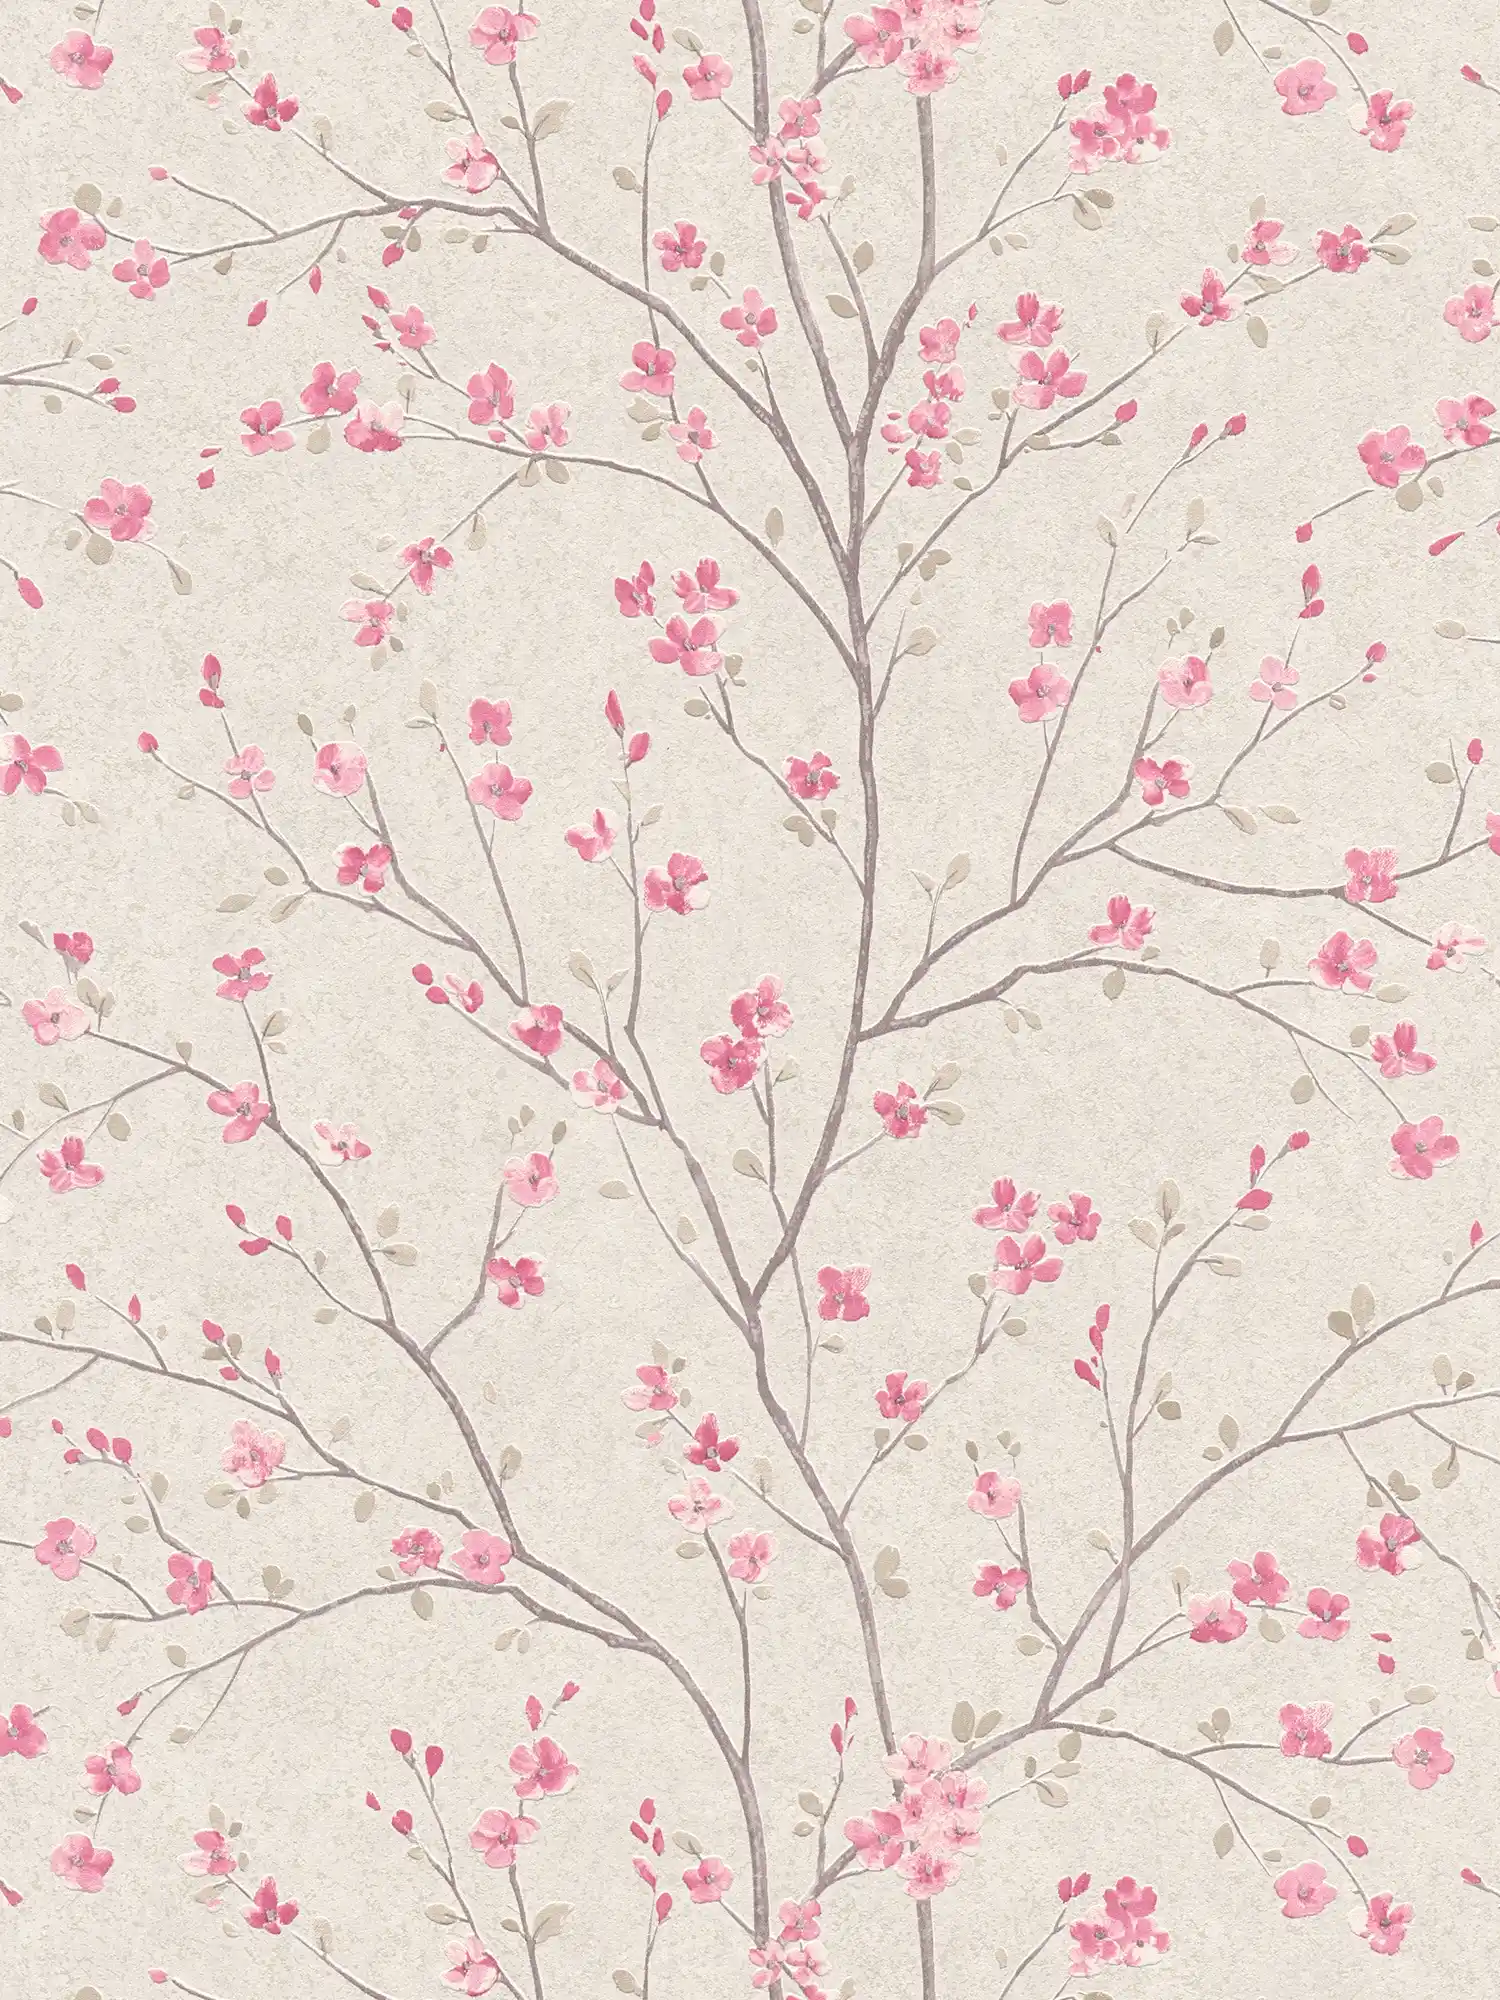 Carta da parati in tessuto non tessuto con disegno di fiori di ciliegio in stile asiatico - marrone, rosa, bianco
